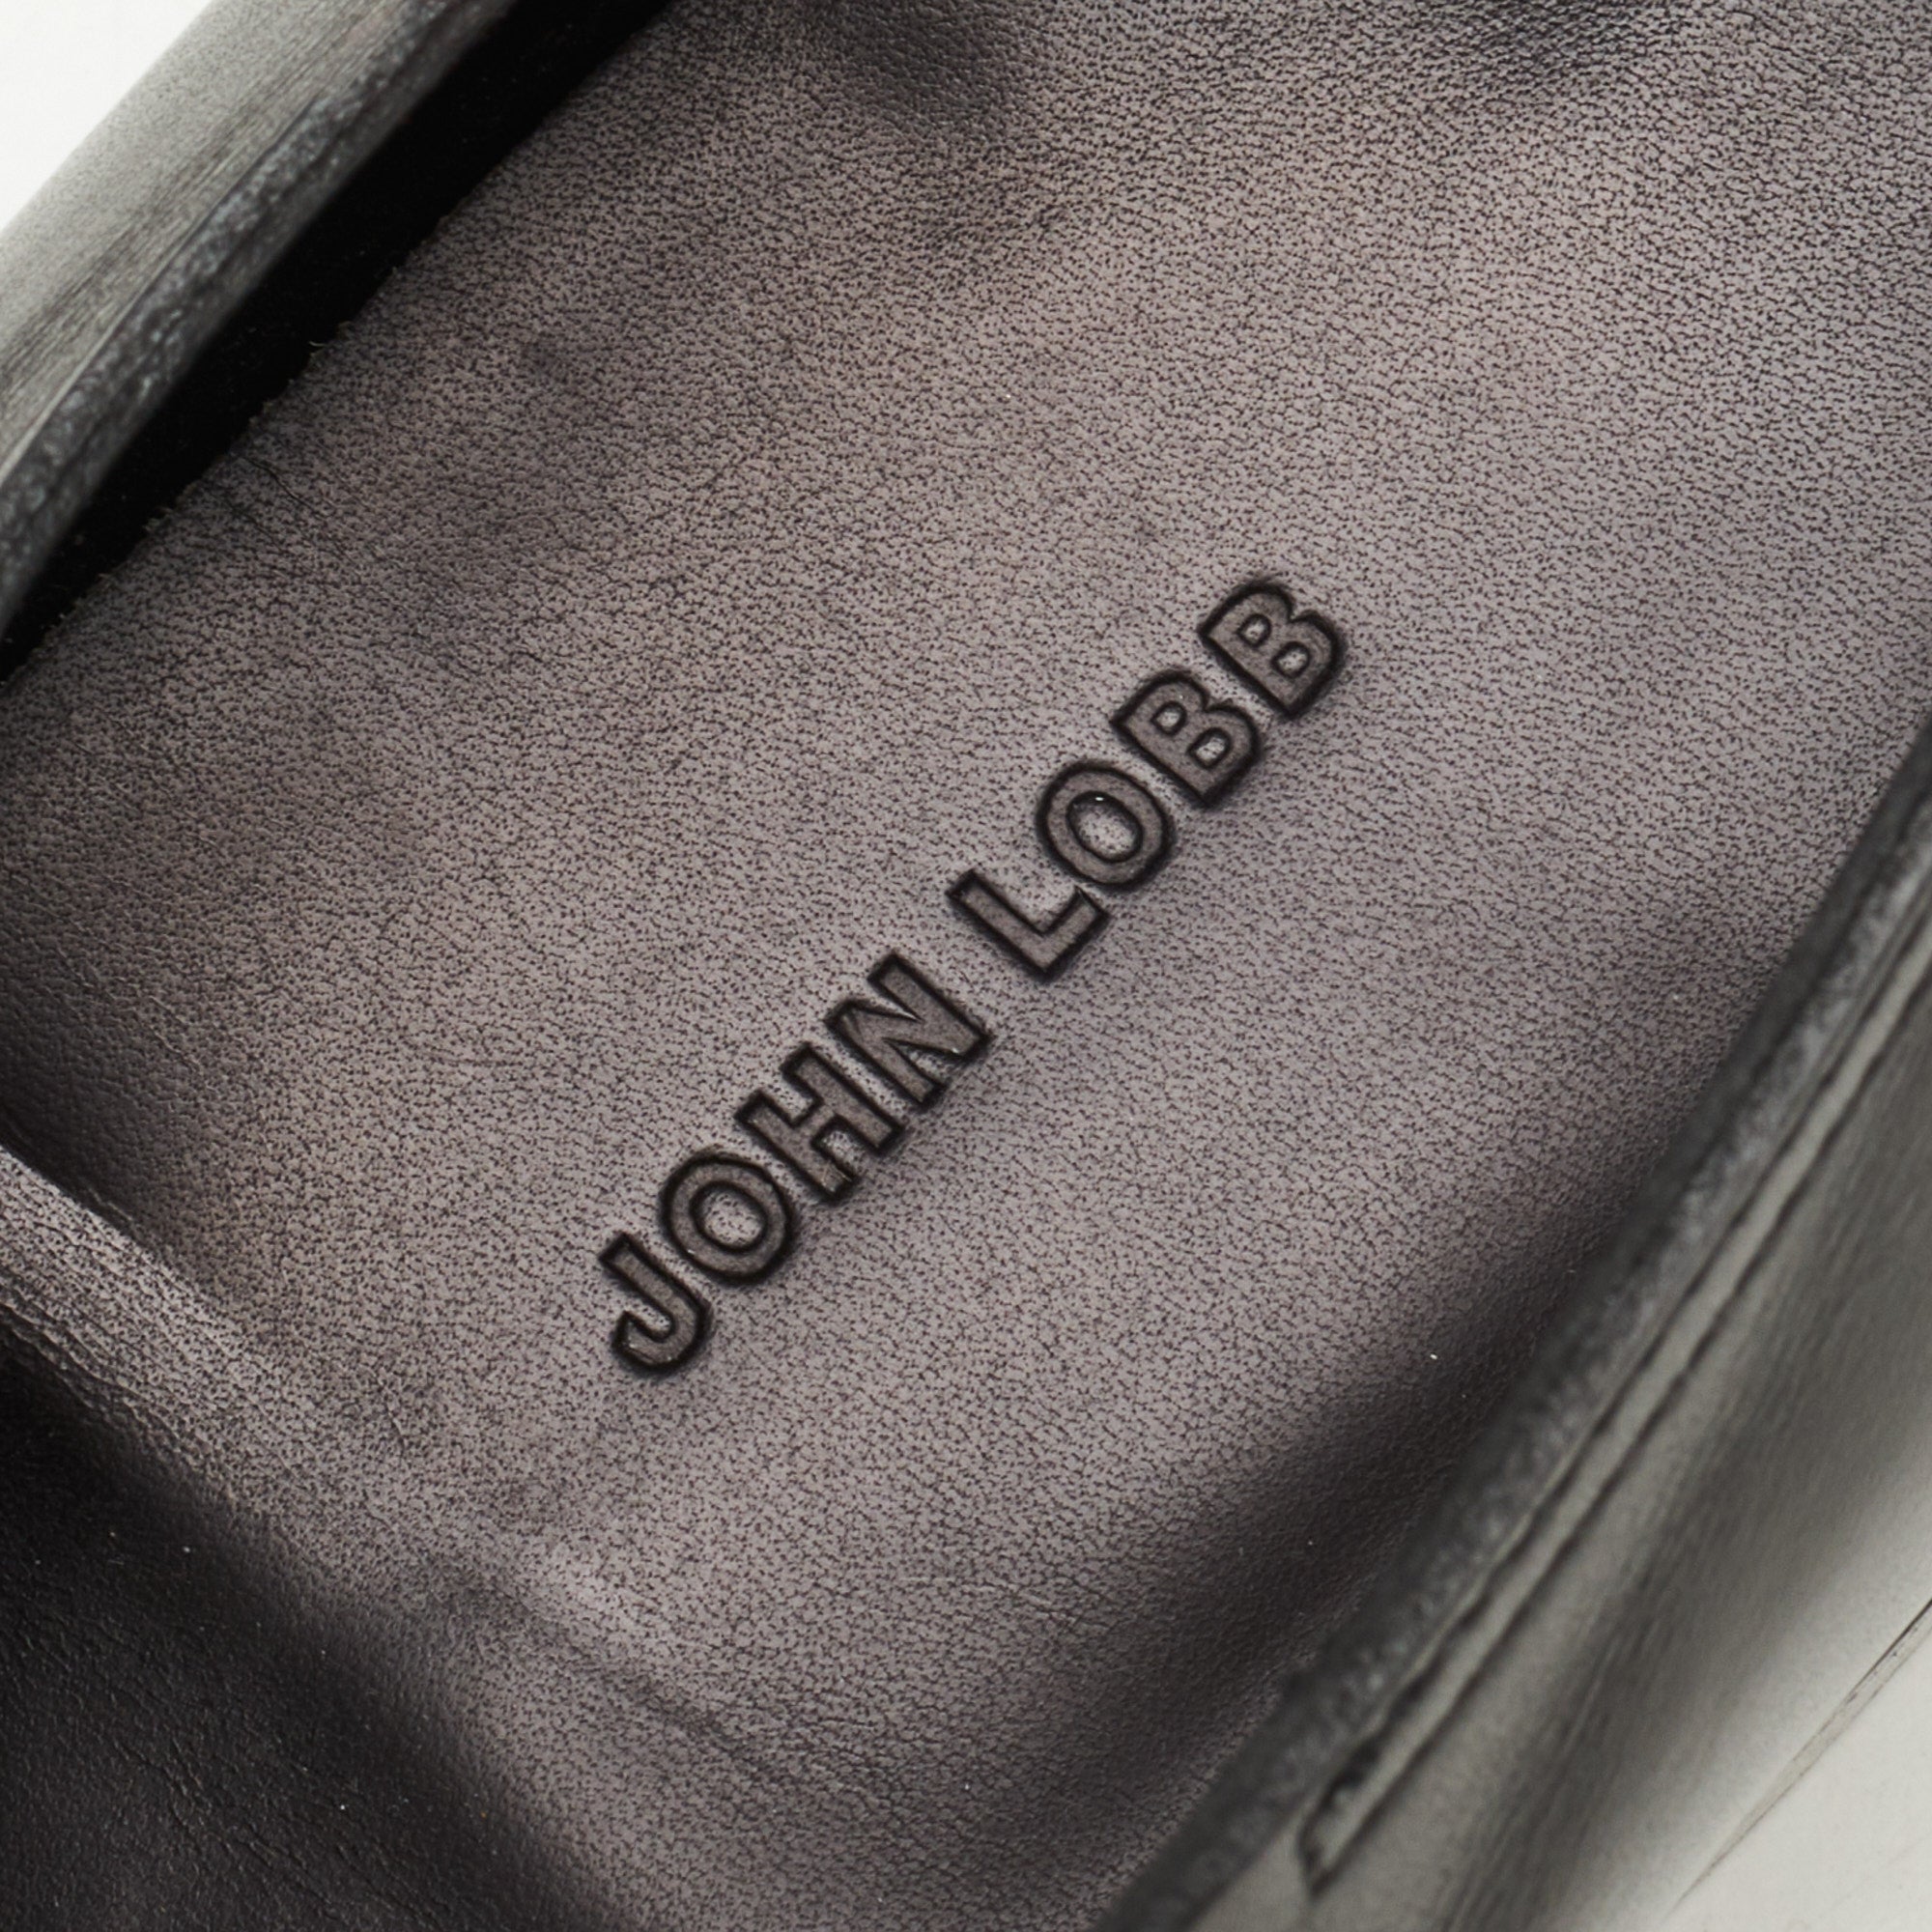 JOHN LOBB "Hayes" Black Leather Double Monk Apron Shoes UK 7.5E US 8.5 Last 7000 JOHN LOBB